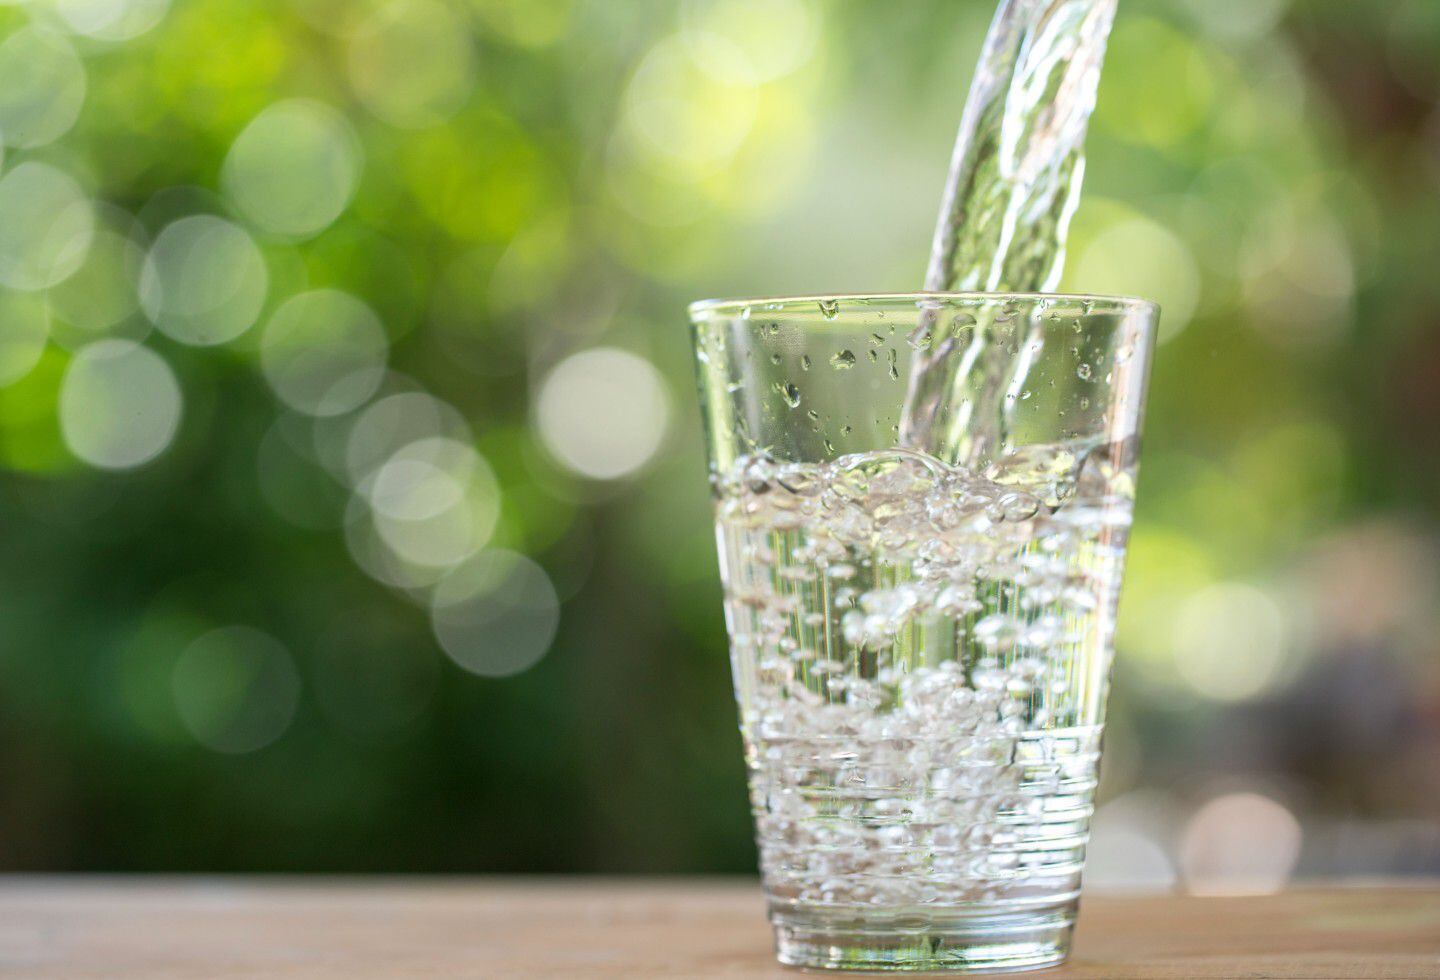 Tomar agua constatemente en el trancurso ayudará en la digestión.